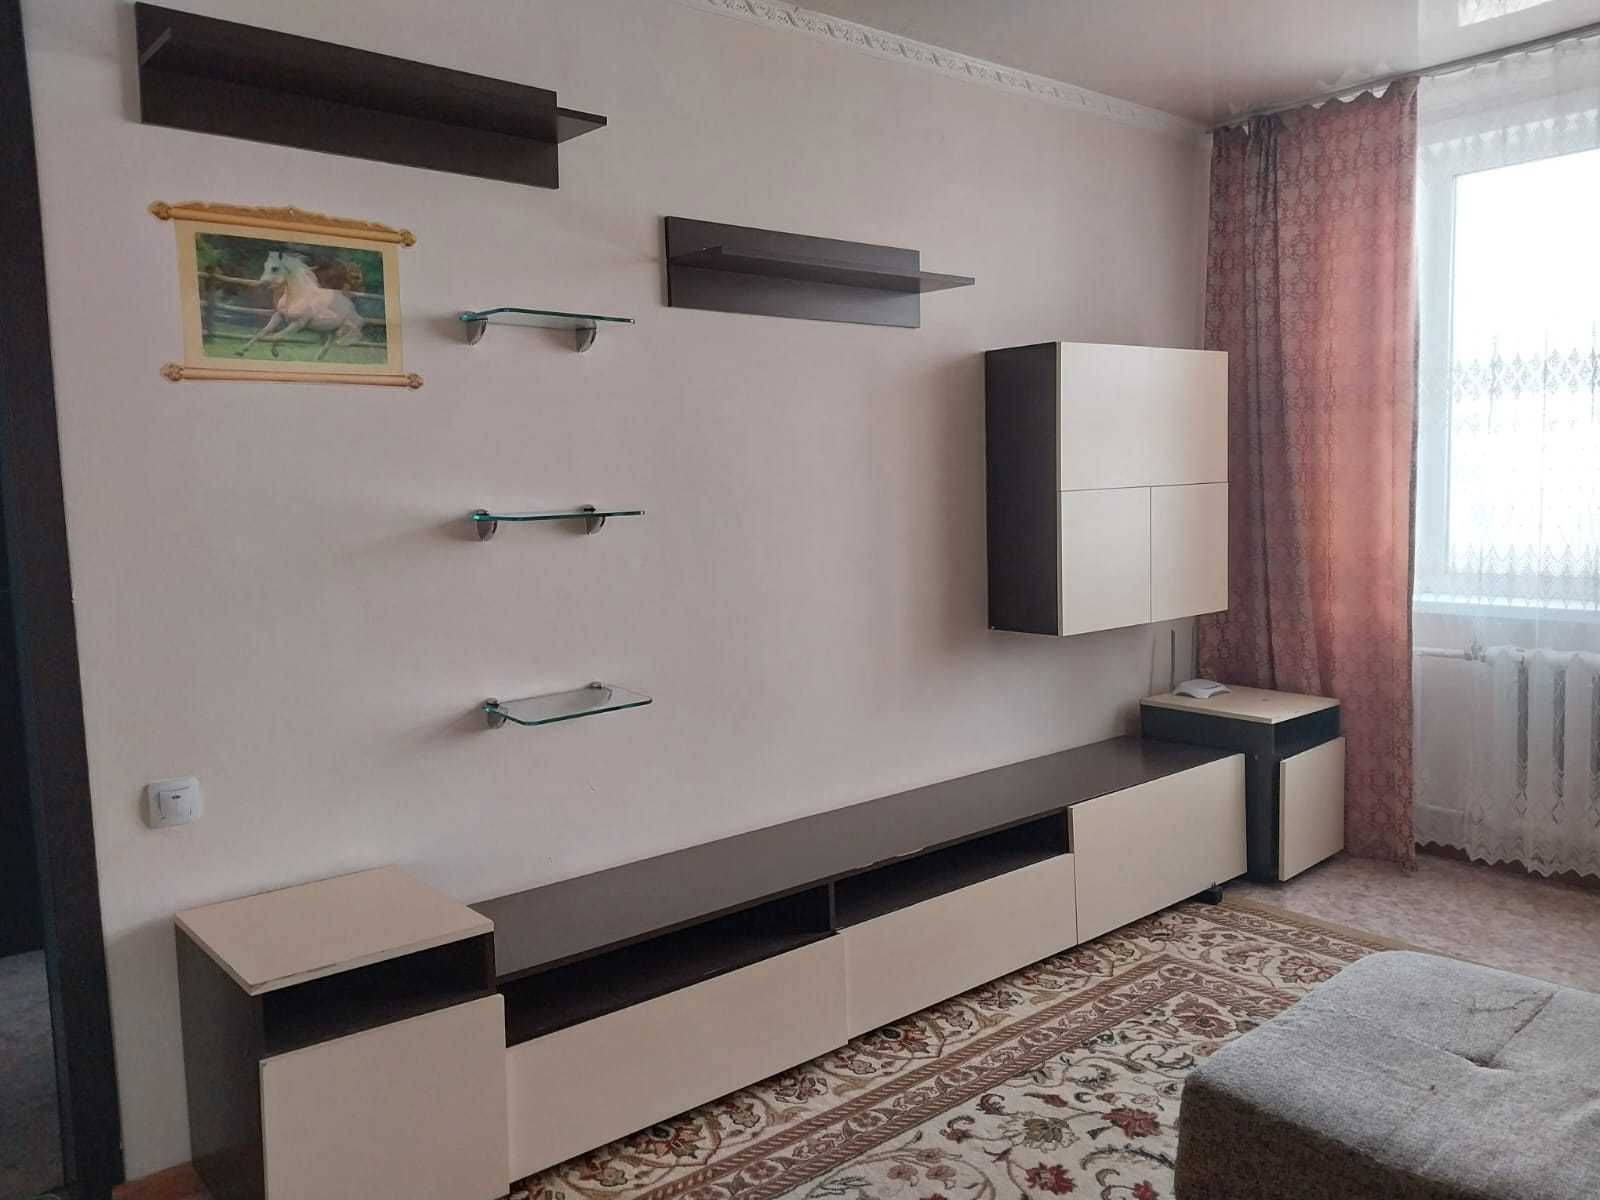 Продам 1-комнатную улучшенную квартиру (ул. Машхур Жусупа-Кривенко)